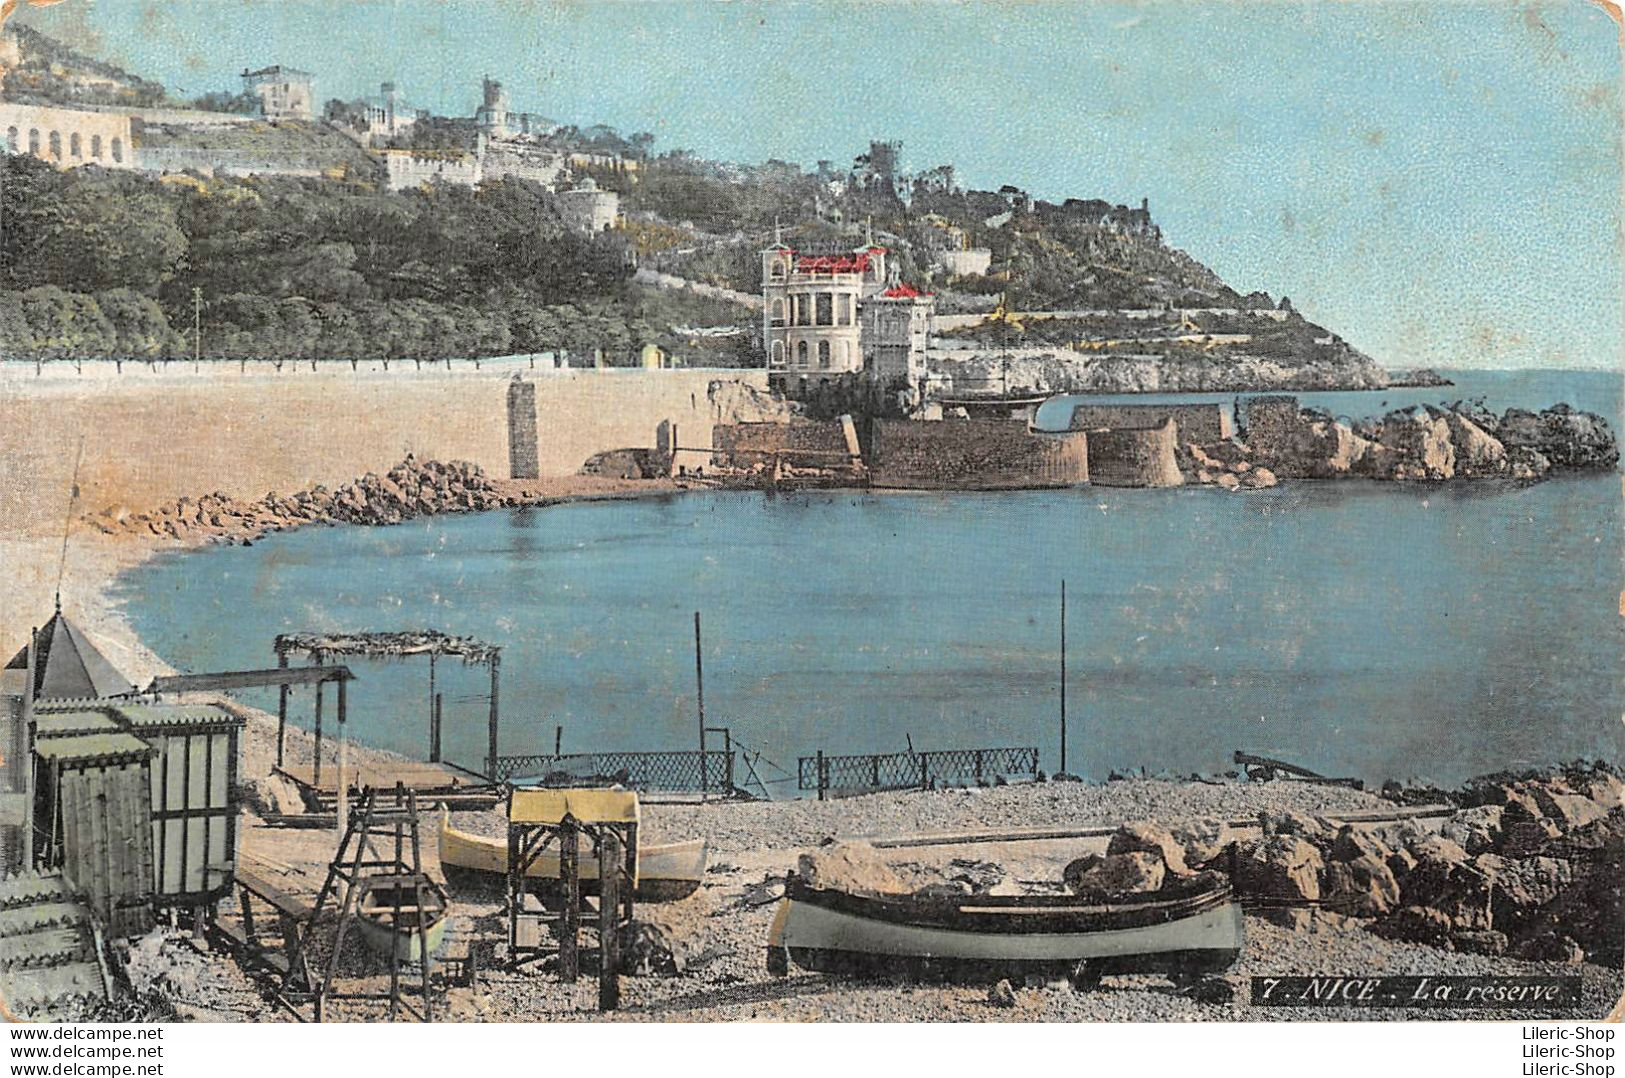 [06]  Nice - Cpa ± 1910 - La Réserve - (Edition L.V. & Cie, Aqua Photo N°7) - Monuments